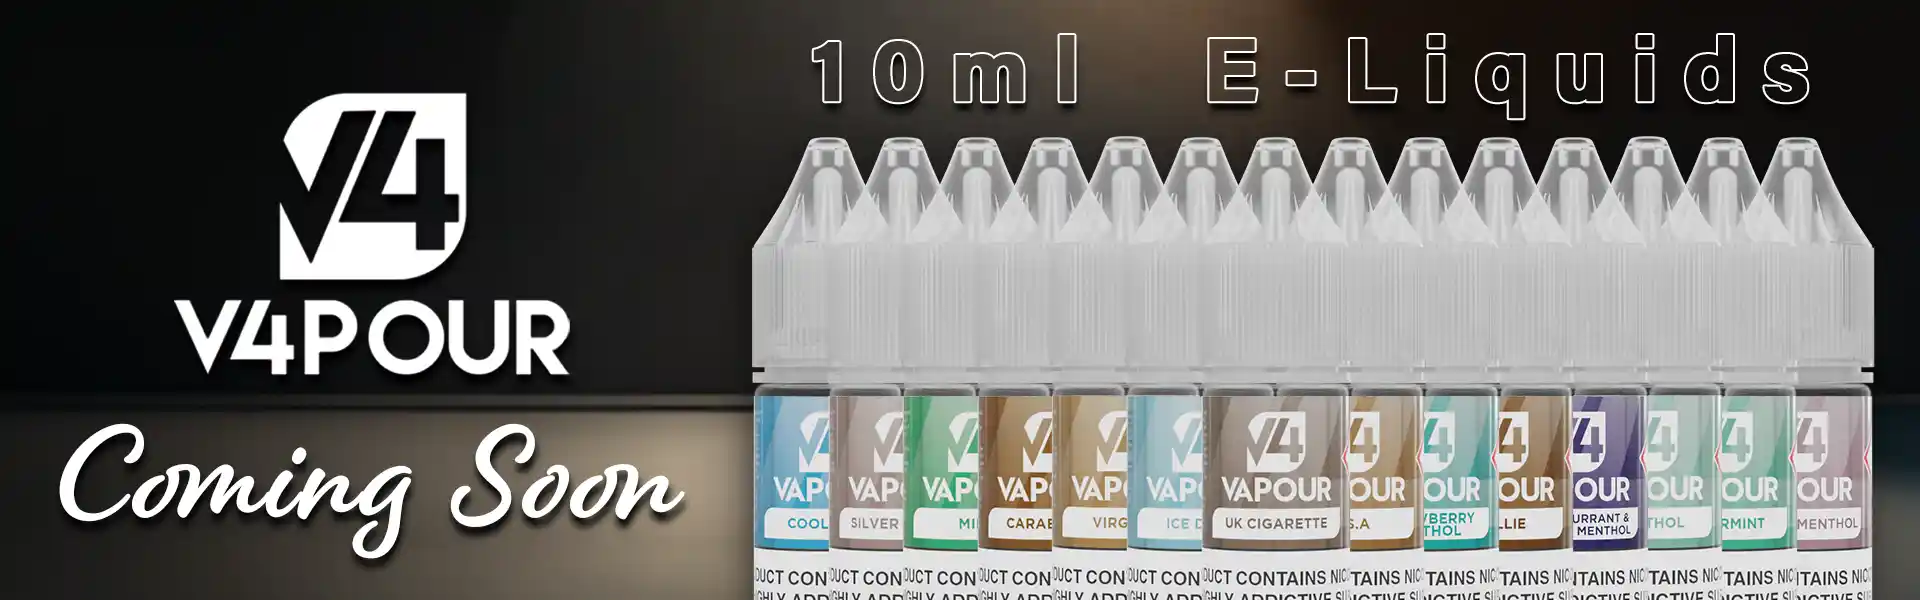 V4 Vapour freebase e-liquid Coming Soon